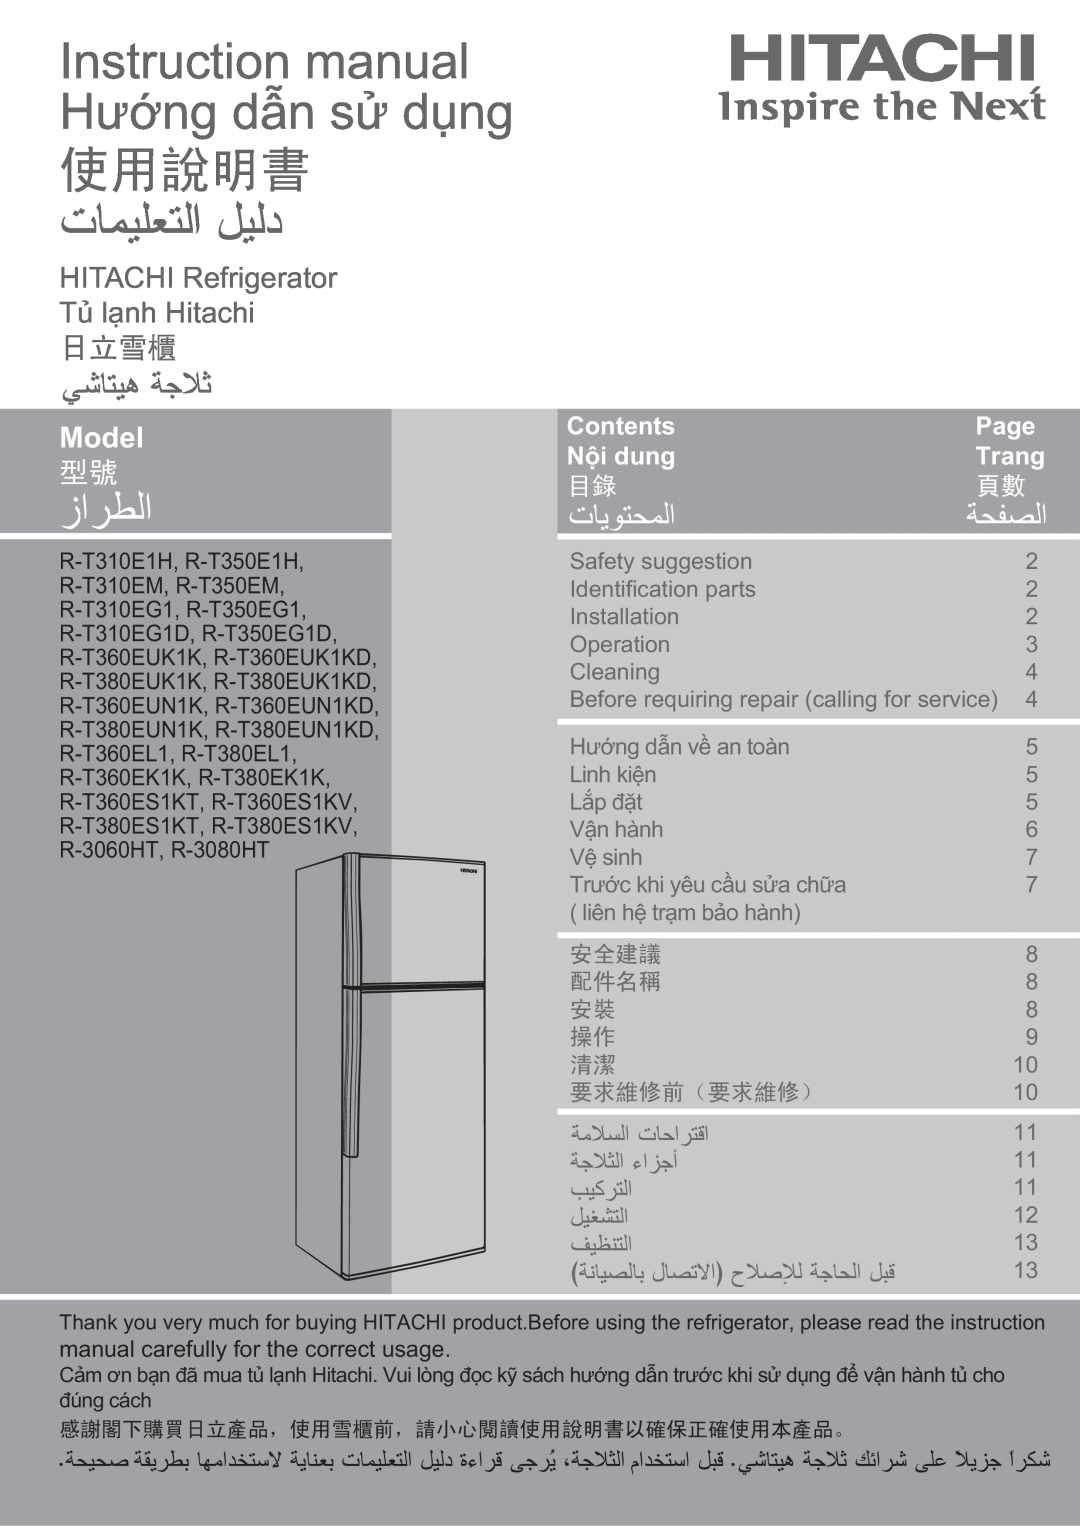 Hitachi refrigerator instruction manual Model, HITACHI Refrigerator Tủ lạnh Hitachi, Contents, Page, Nội dung, Trang 